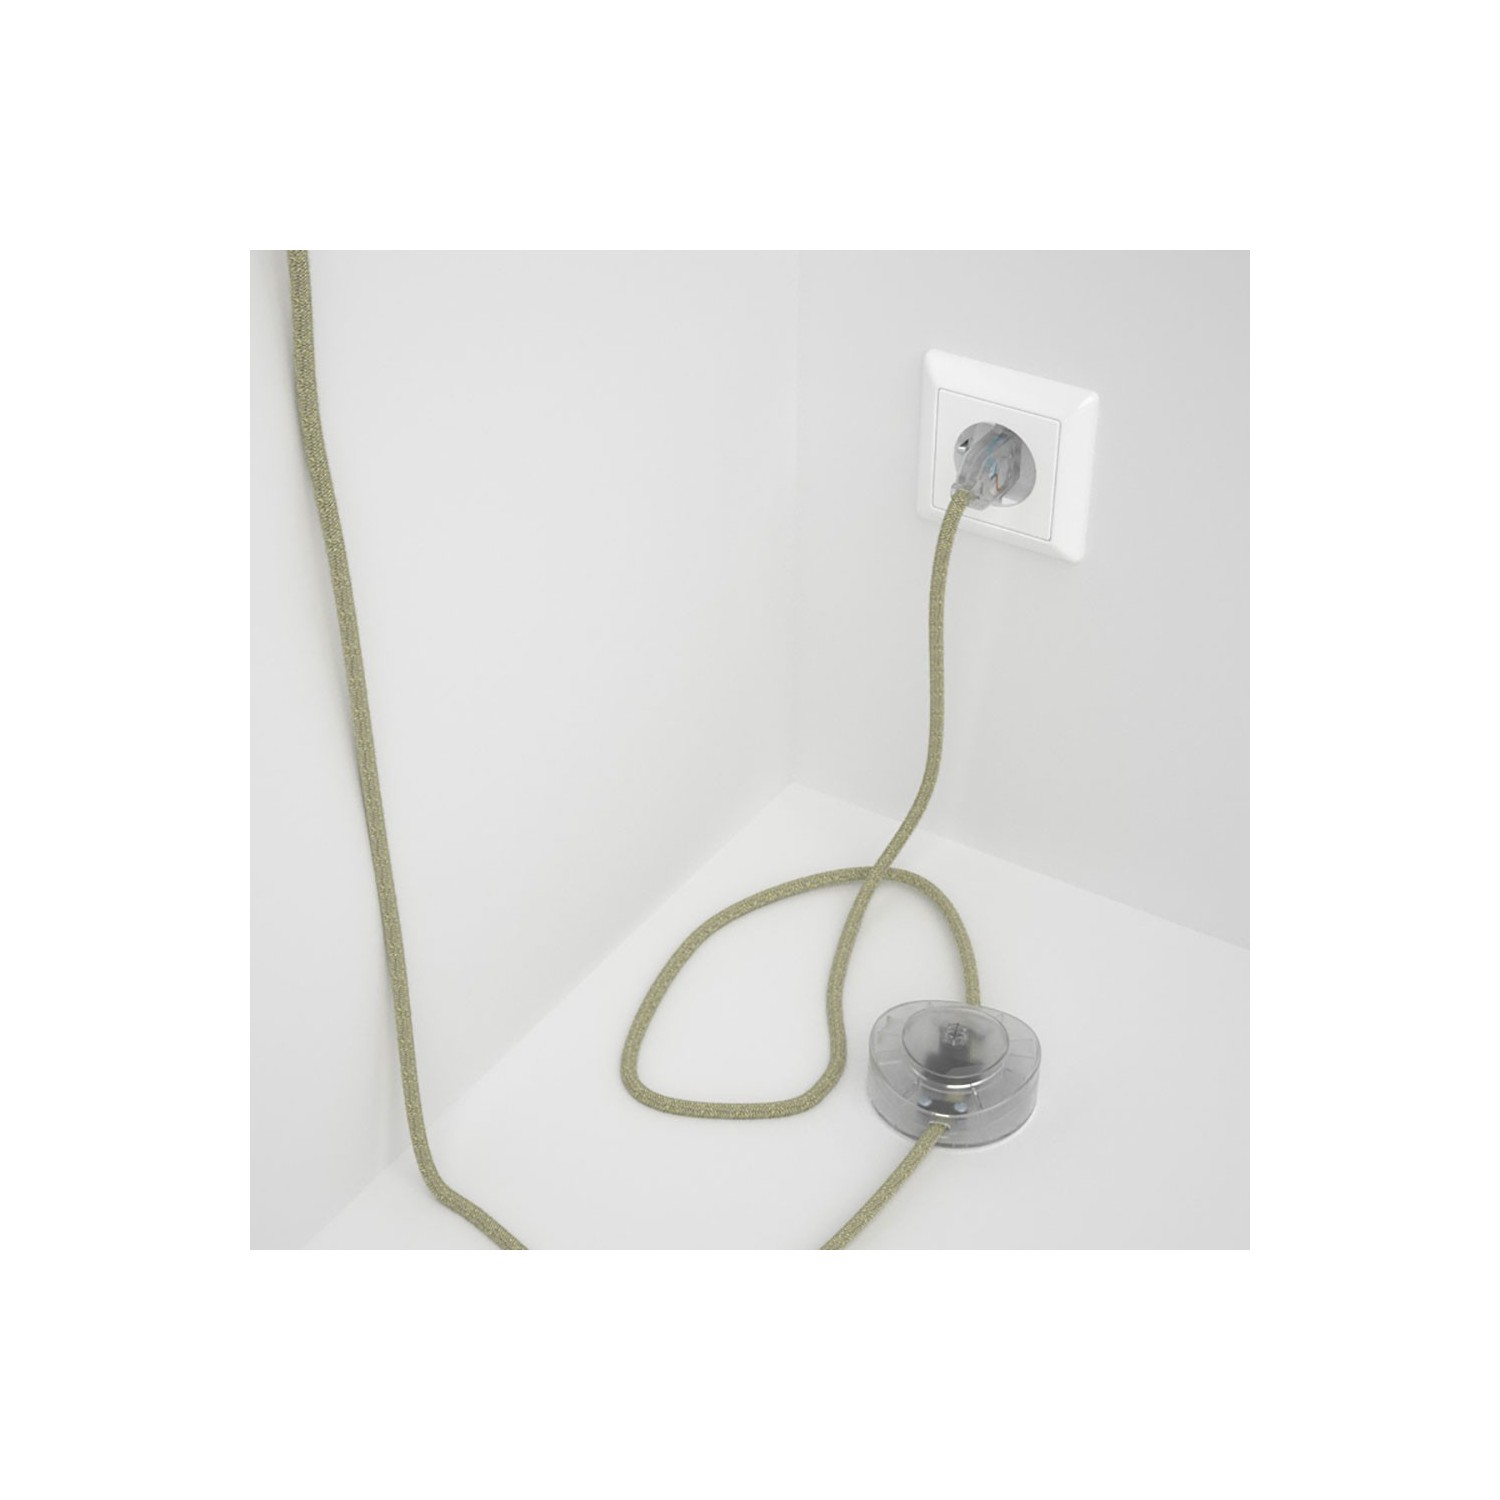 Cableado para lámpara de pie, cable RN01 Lino Natural Neutro 3 m. Elige tu el color de la clavija y del interruptor!